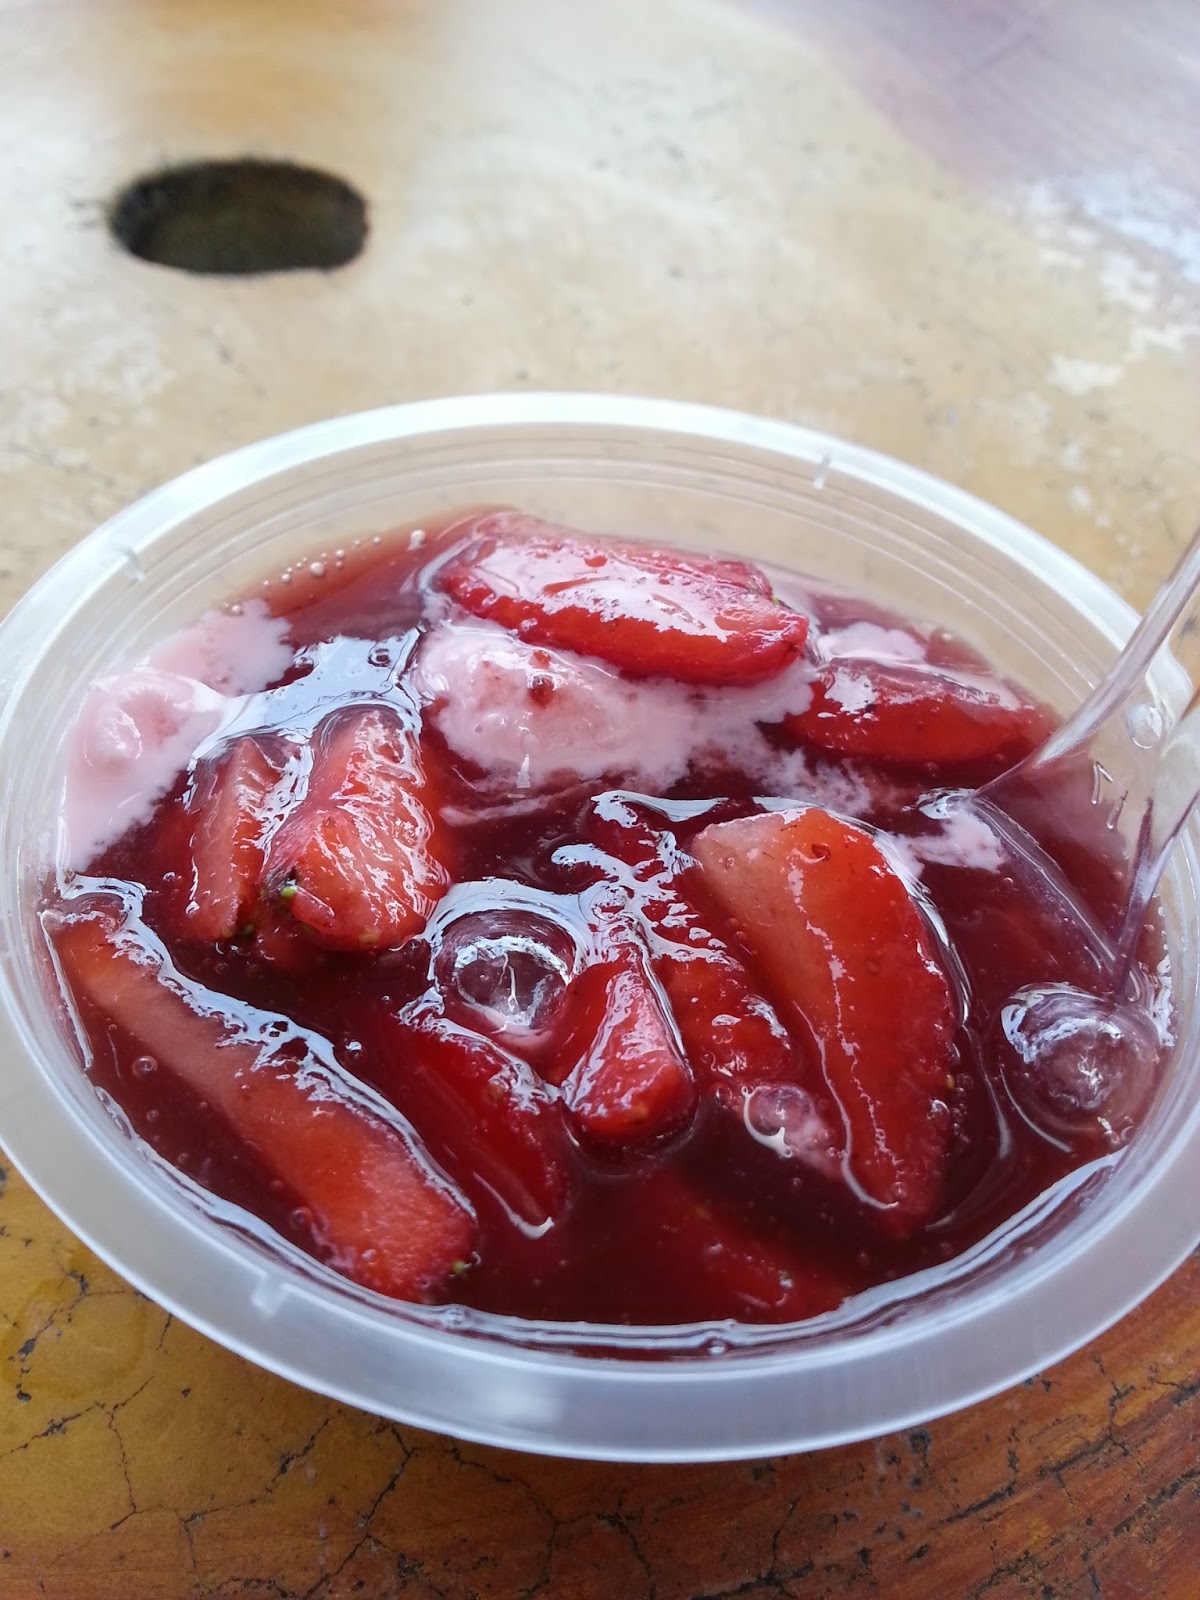 Ice blended strawberry mcd